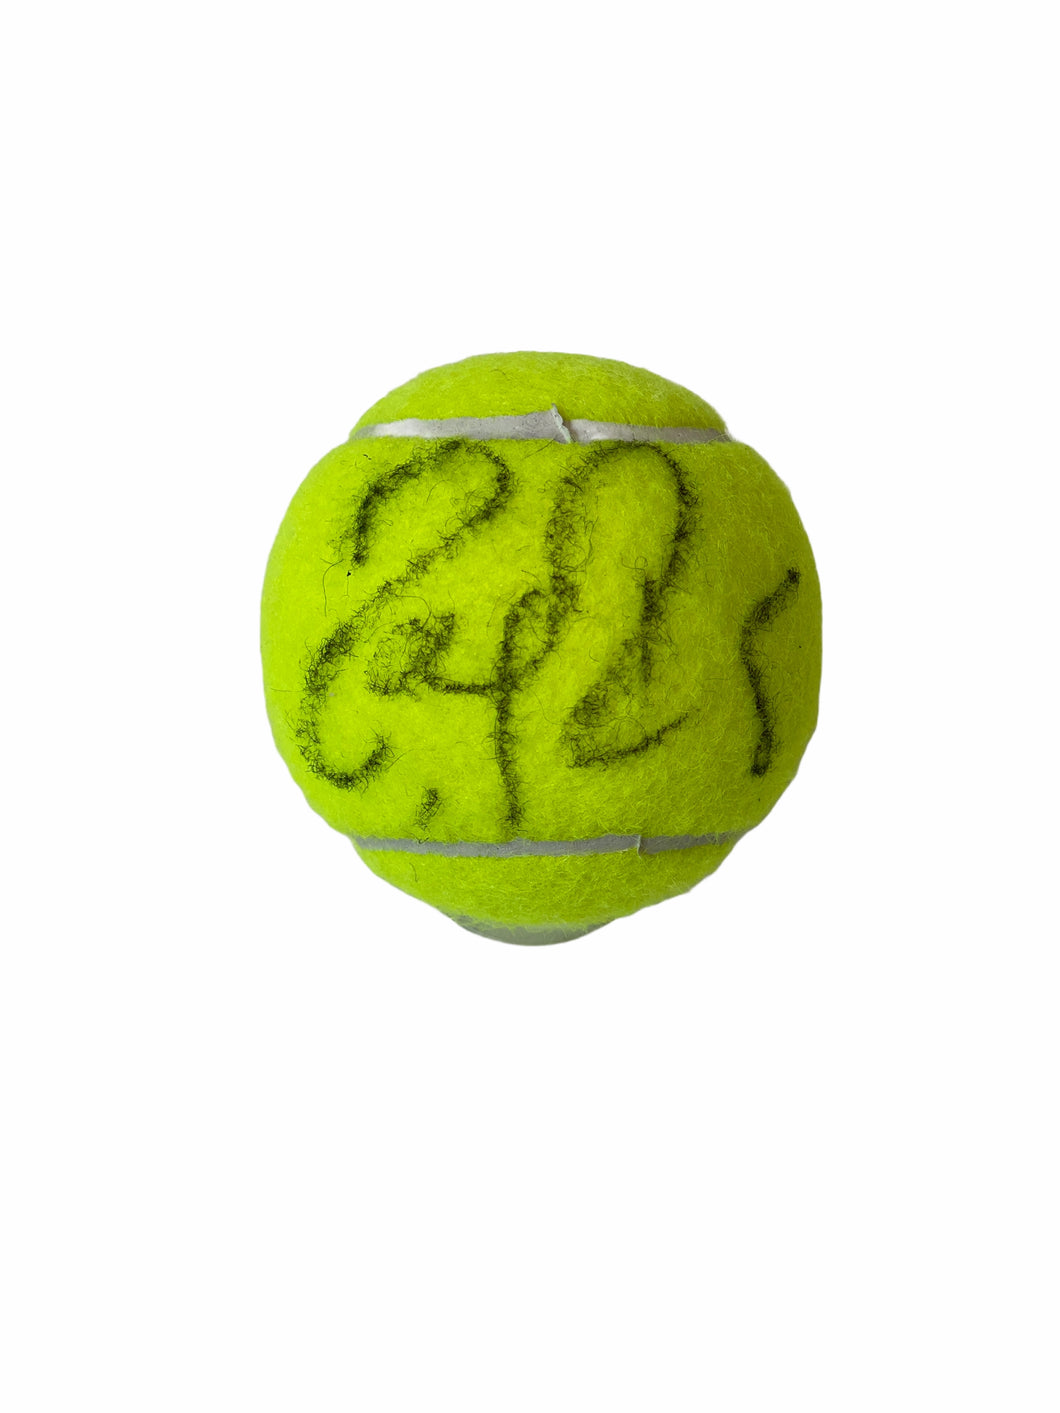 Pelota / Tenis / Roger Federer